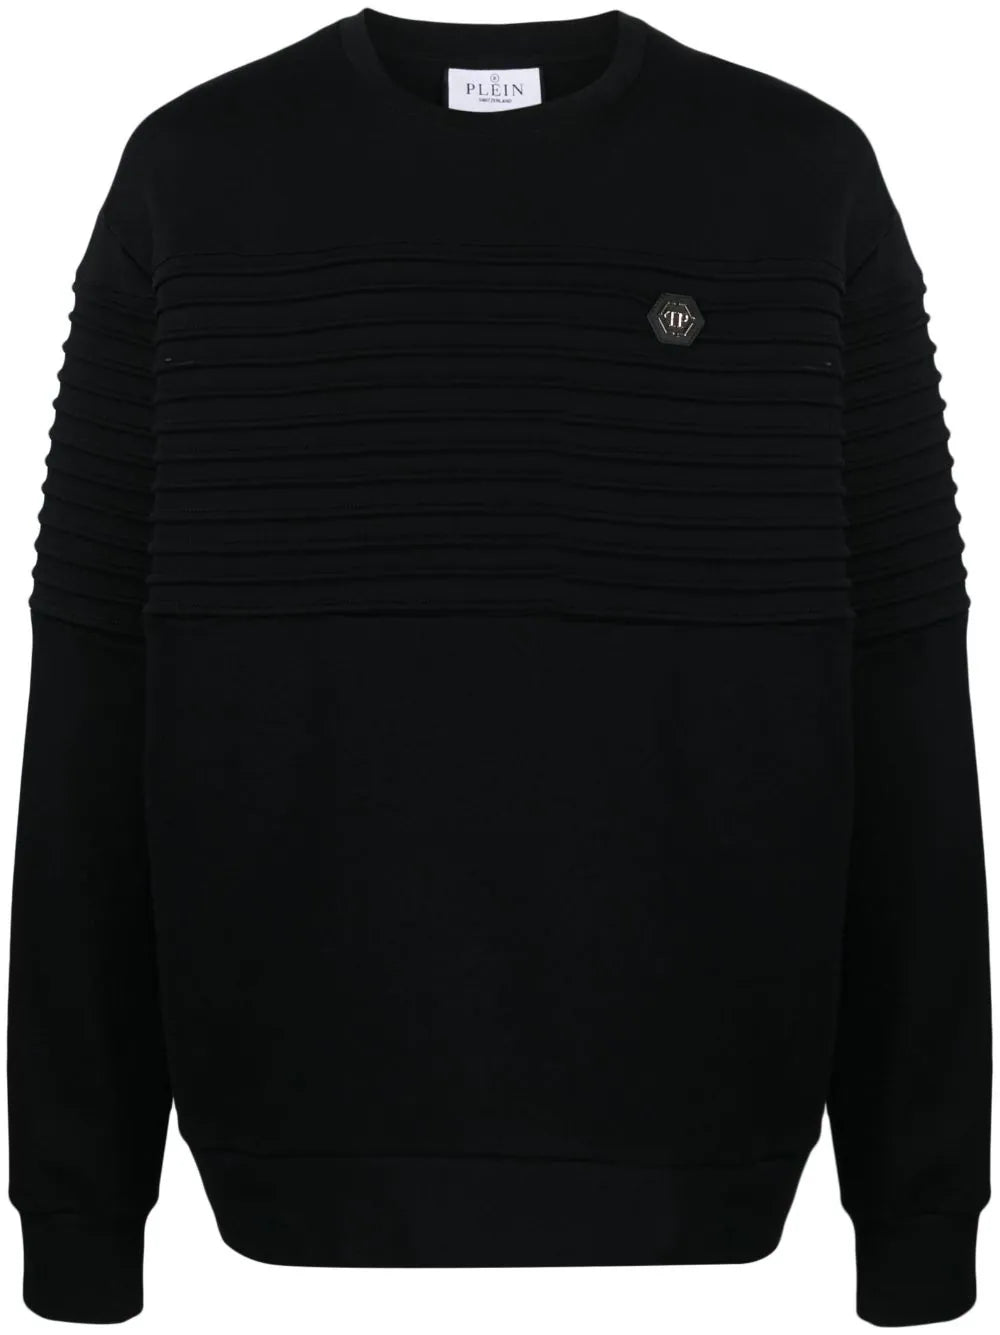 Philipp Plein Black Gothic Plein Sweatshirt